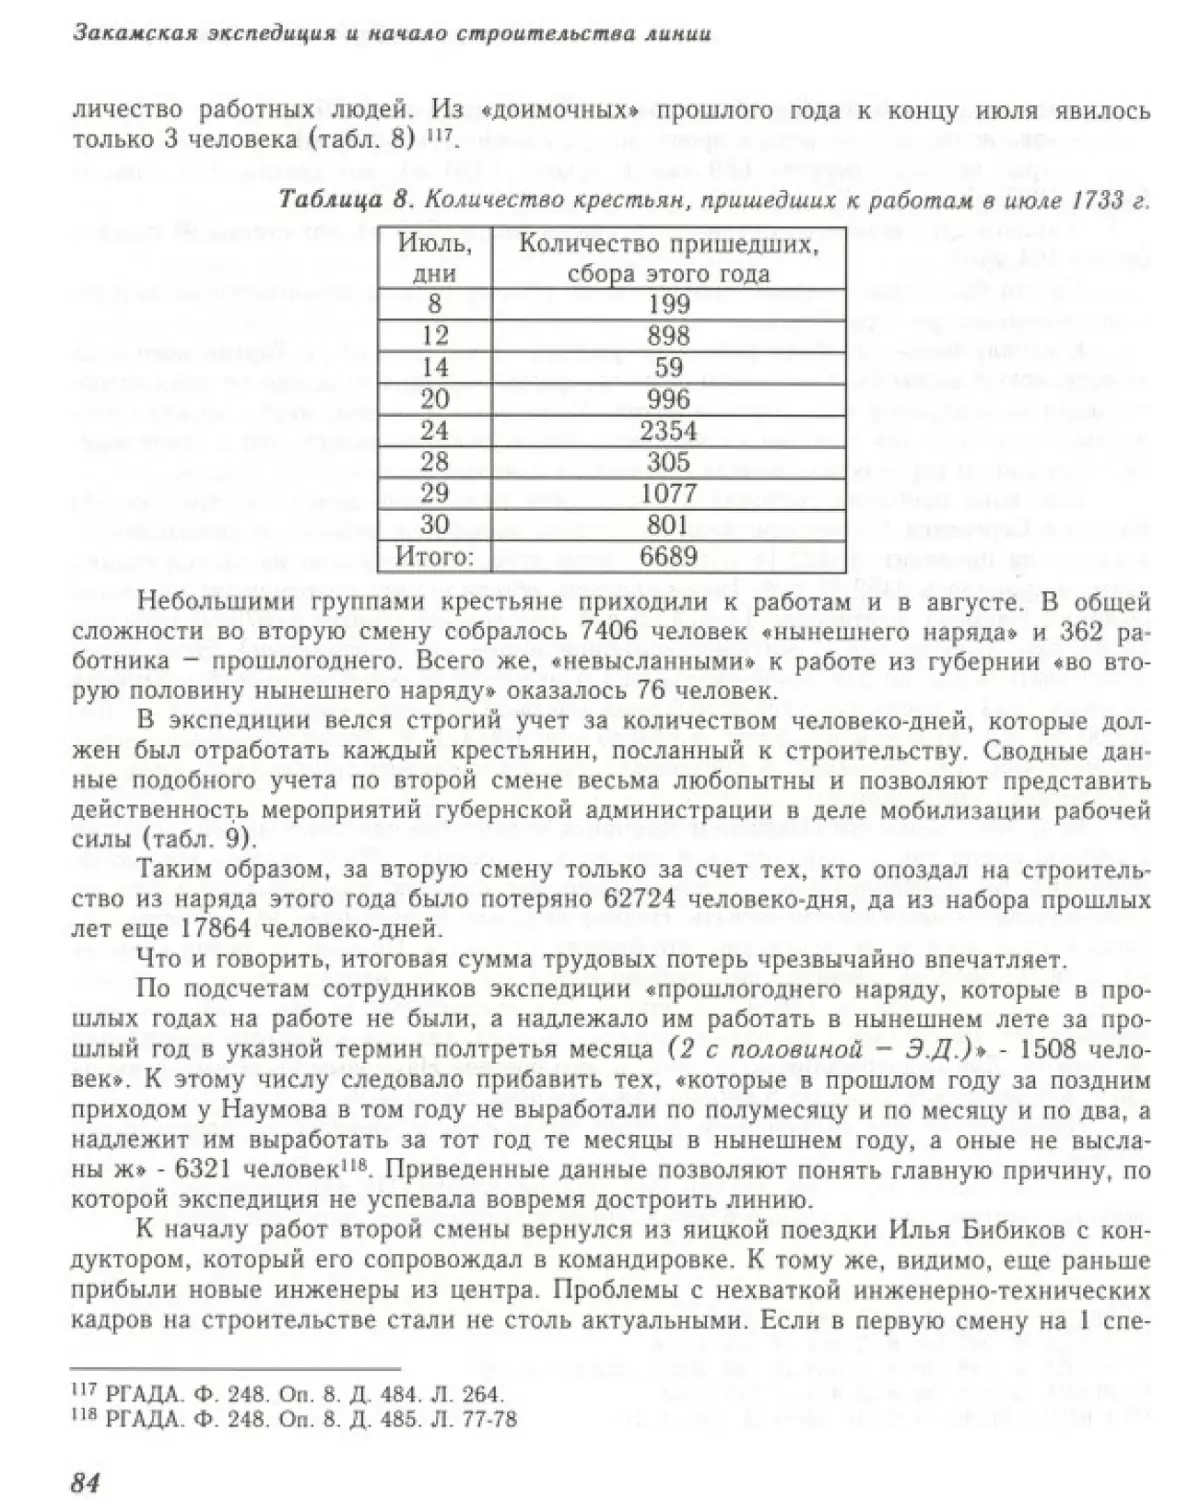 Вал0086.pdf (p.85)